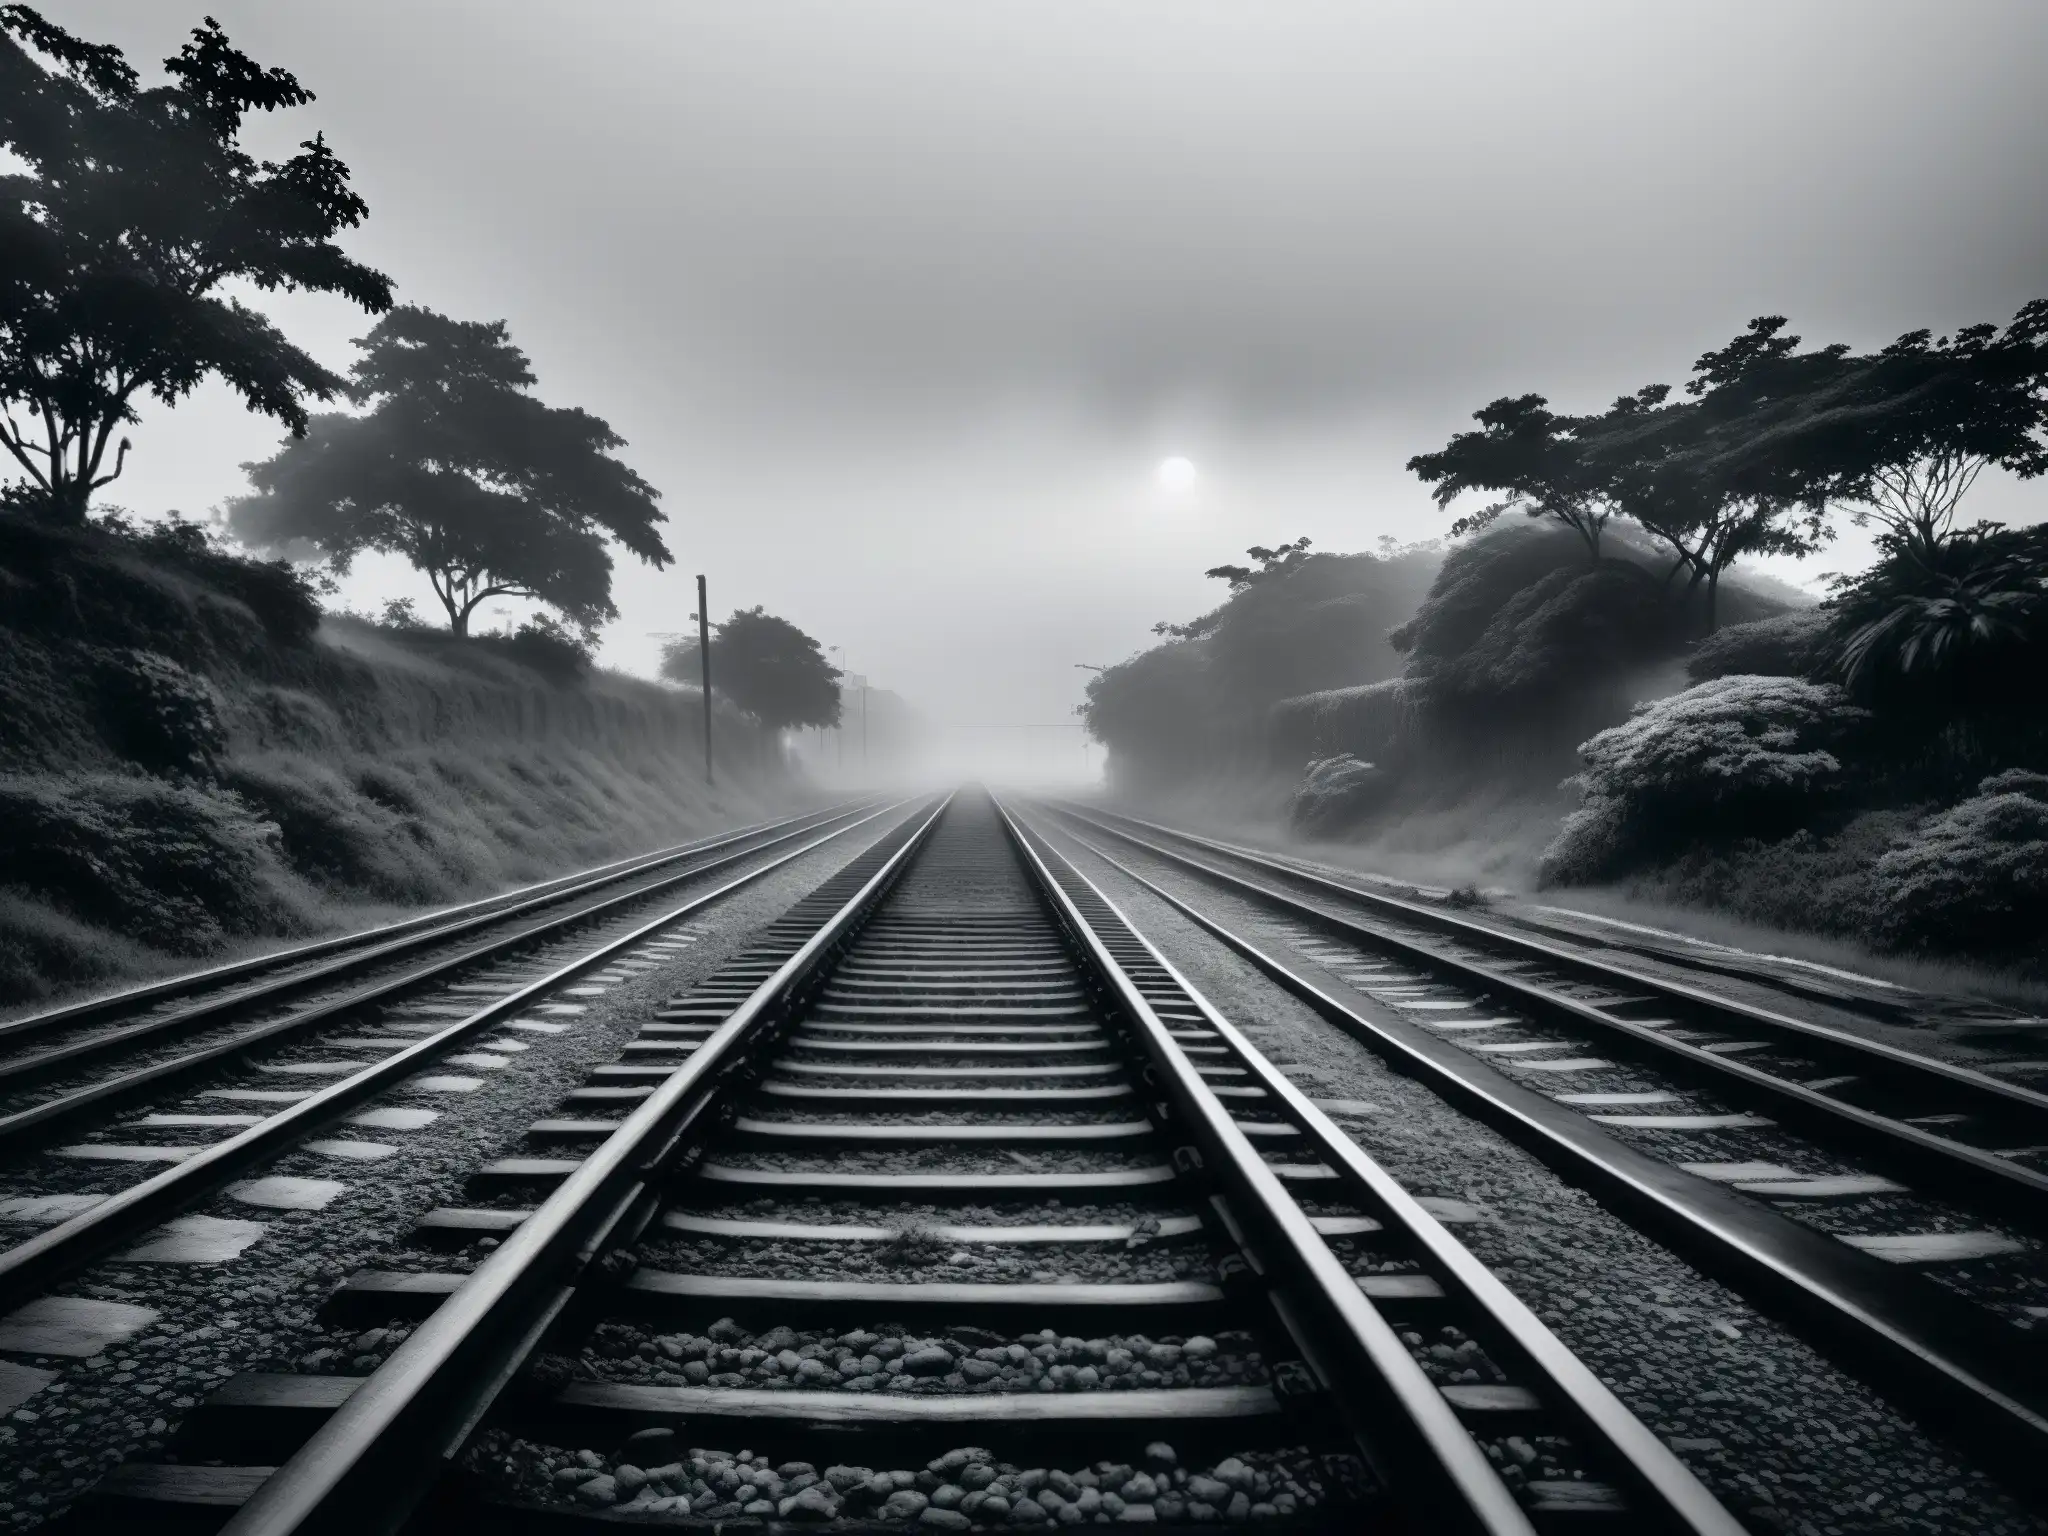 Tren fantasma Bishan mito realidad: Vías solitarias envueltas en neblina, revelan la leyenda del tren abandonado